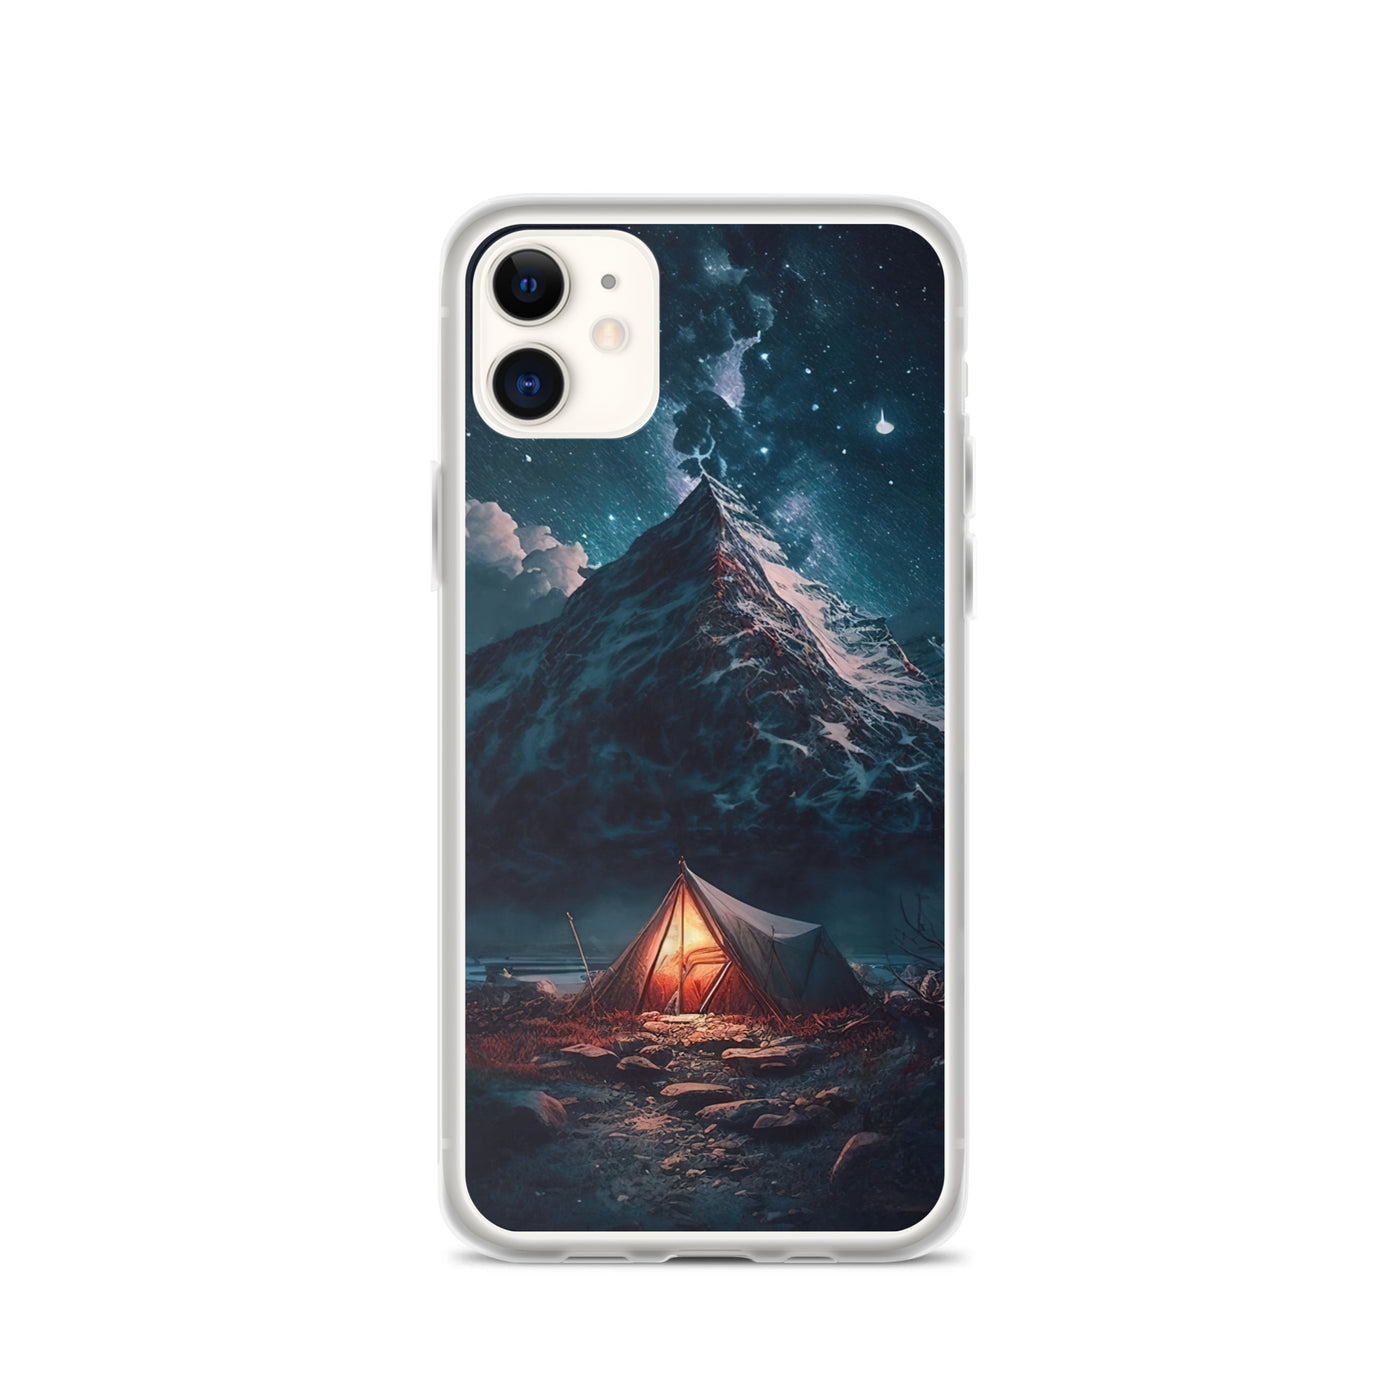 Zelt und Berg in der Nacht - Sterne am Himmel - Landschaftsmalerei - iPhone Schutzhülle (durchsichtig) camping xxx iPhone 11